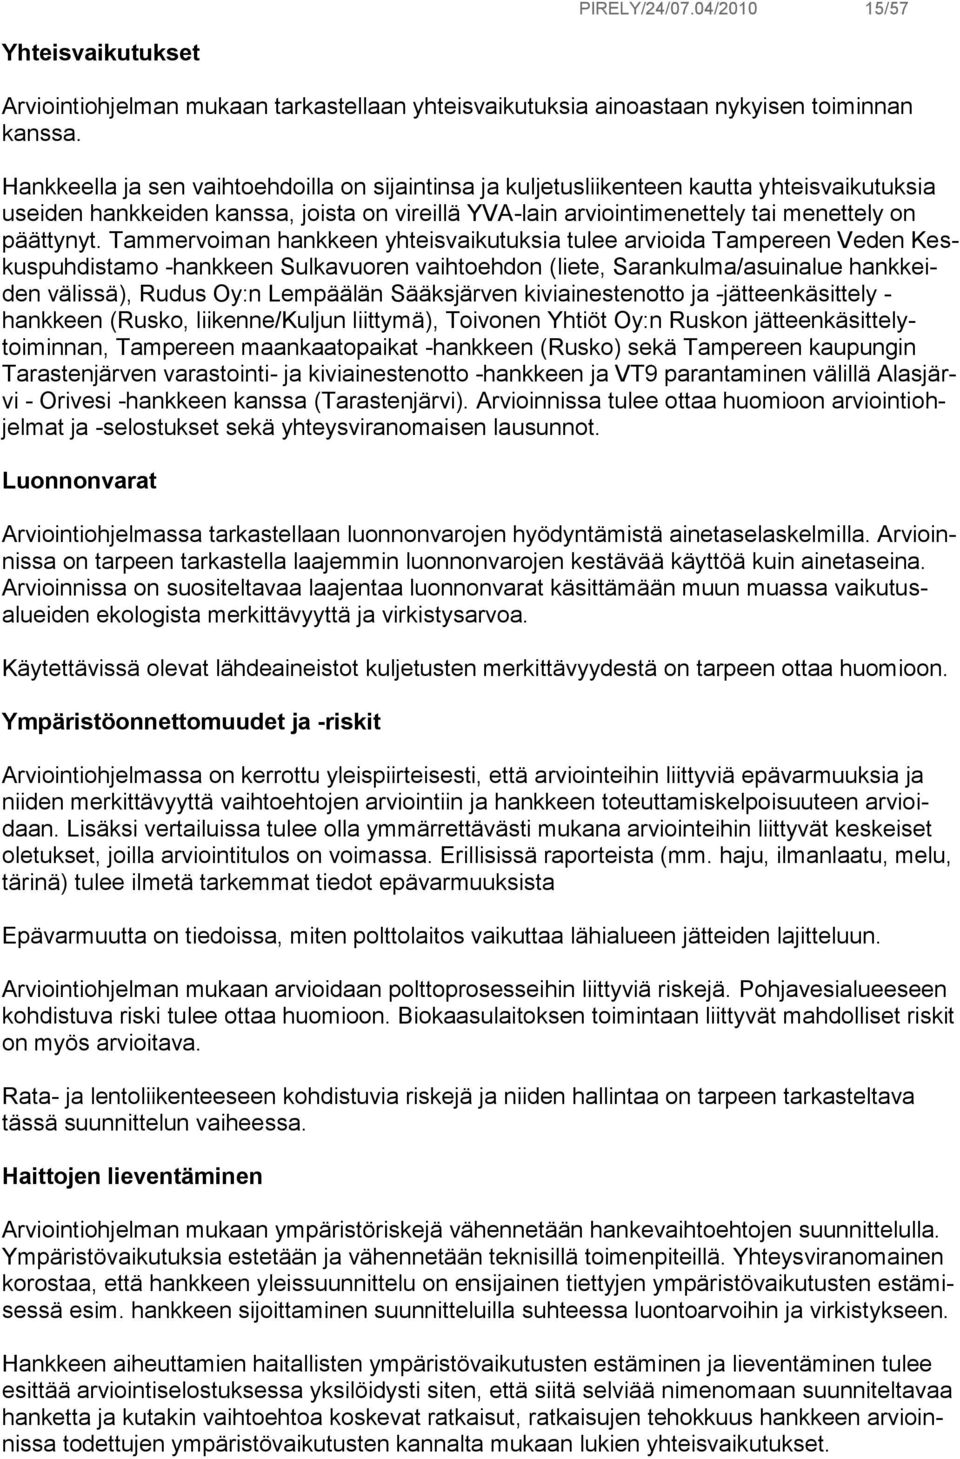 Tammervoiman hankkeen yhteisvaikutuksia tulee arvioida Tampereen Veden Keskuspuhdistamo -hankkeen Sulkavuoren vaihtoehdon (liete, Sarankulma/asuinalue hankkeiden välissä), Rudus Oy:n Lempäälän